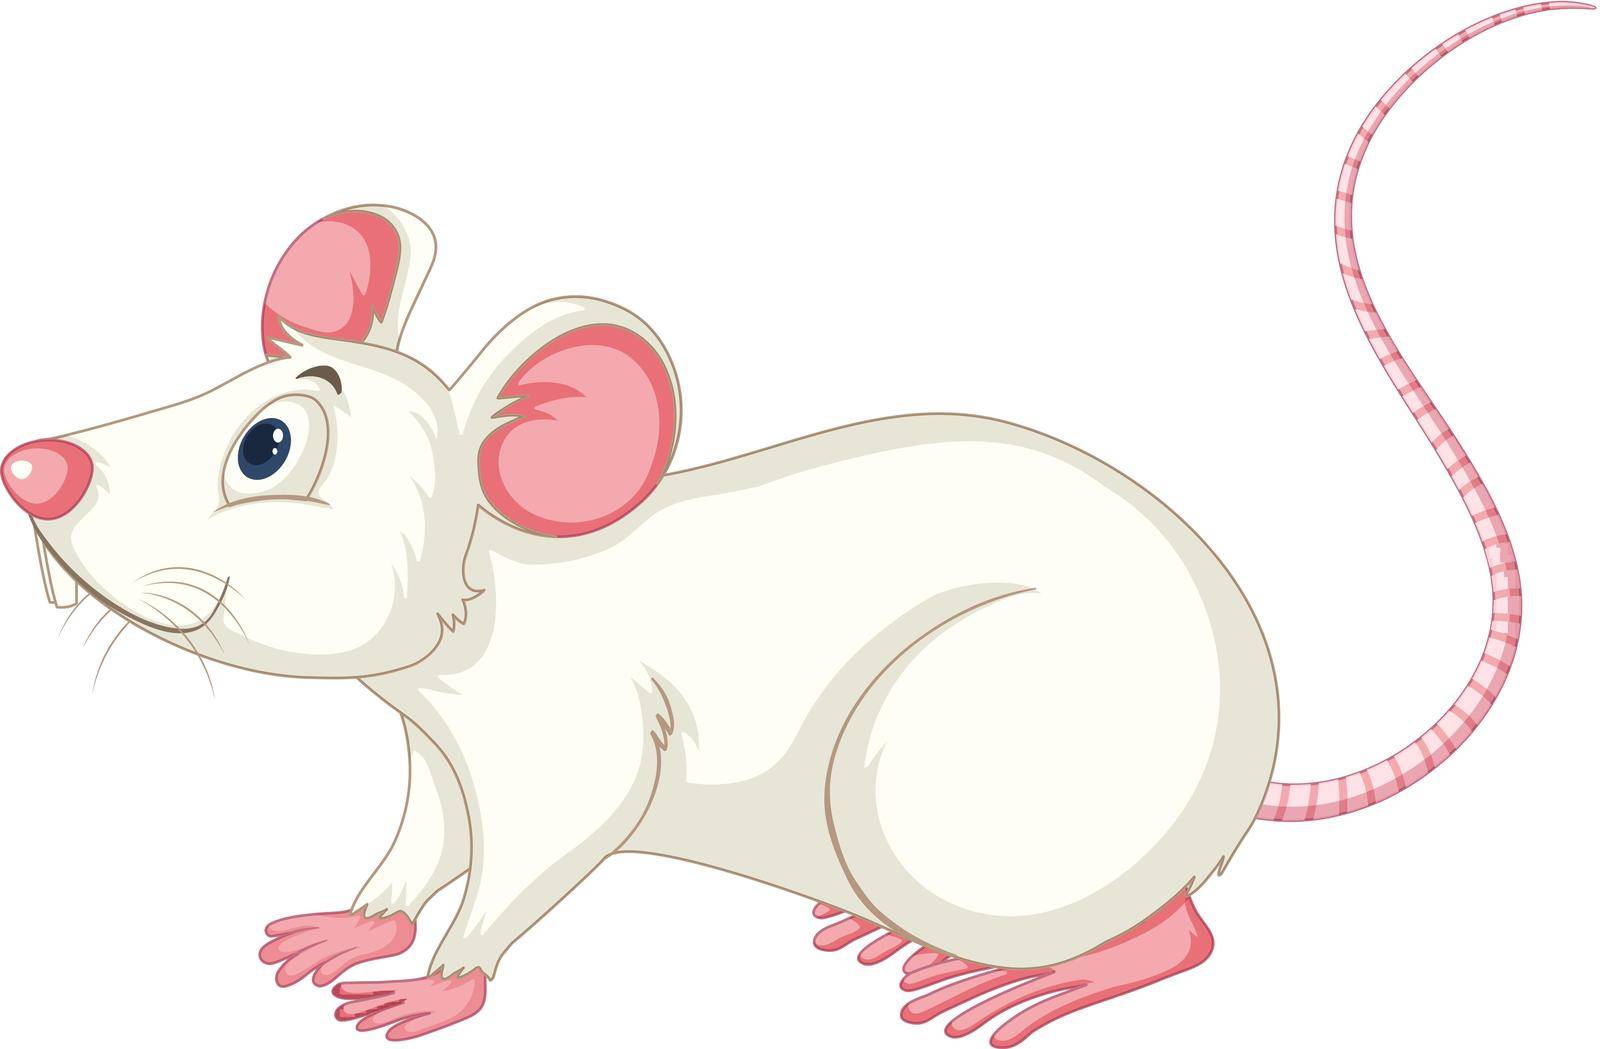 White rat on white background illustration